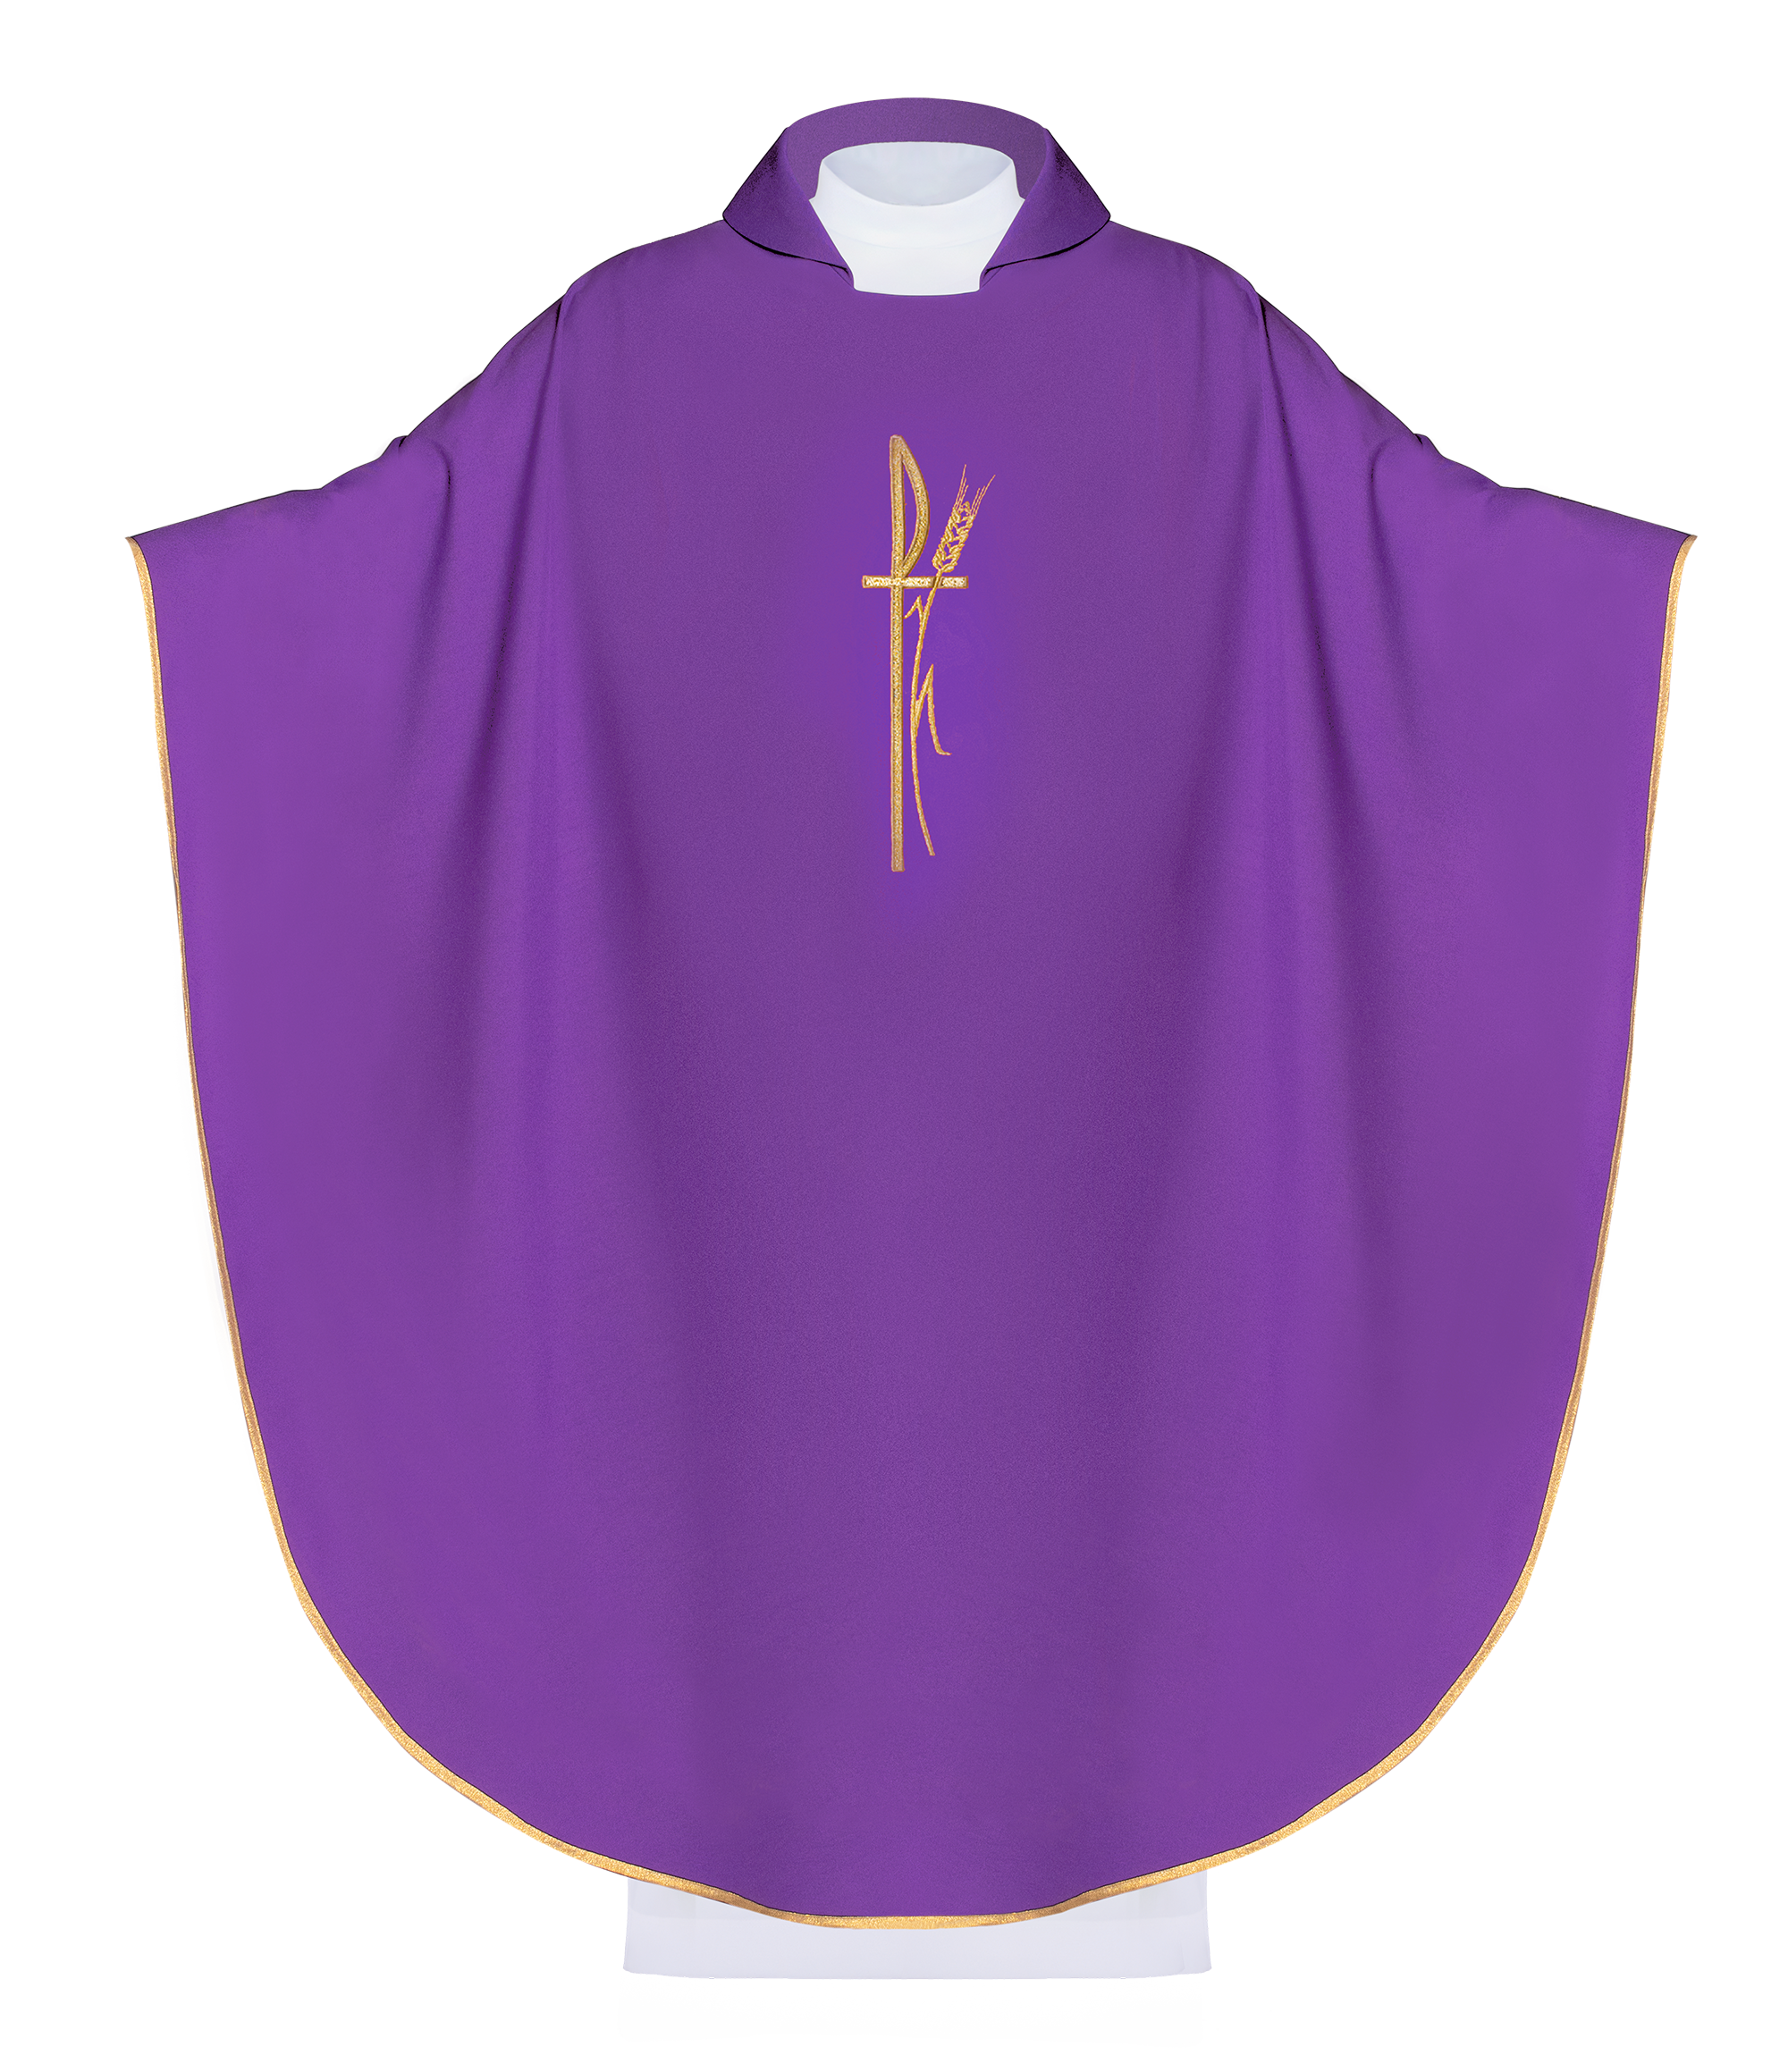 Fioletowy ornat liturgiczny z szerokim kołnierzem i delikatnie haftowanym krzyżem